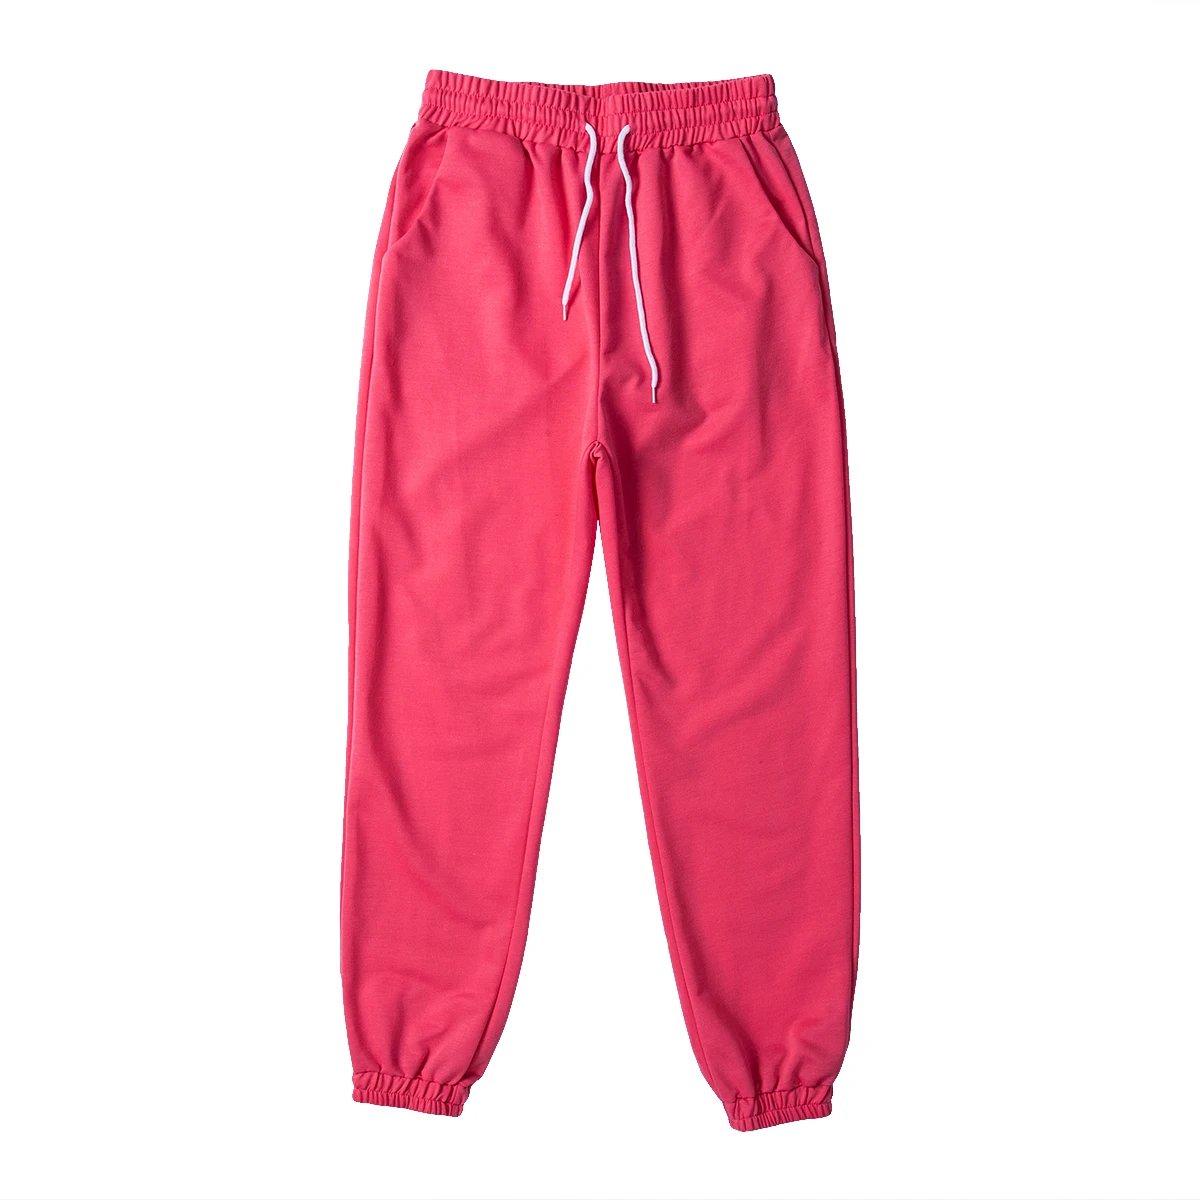 Активные женские тренировочные брюки с высокой талией для спорта, эластичные спортивные брюки, повседневные женские длинные штаны на шнурке для девочек, джоггеры - Цвет: Красный